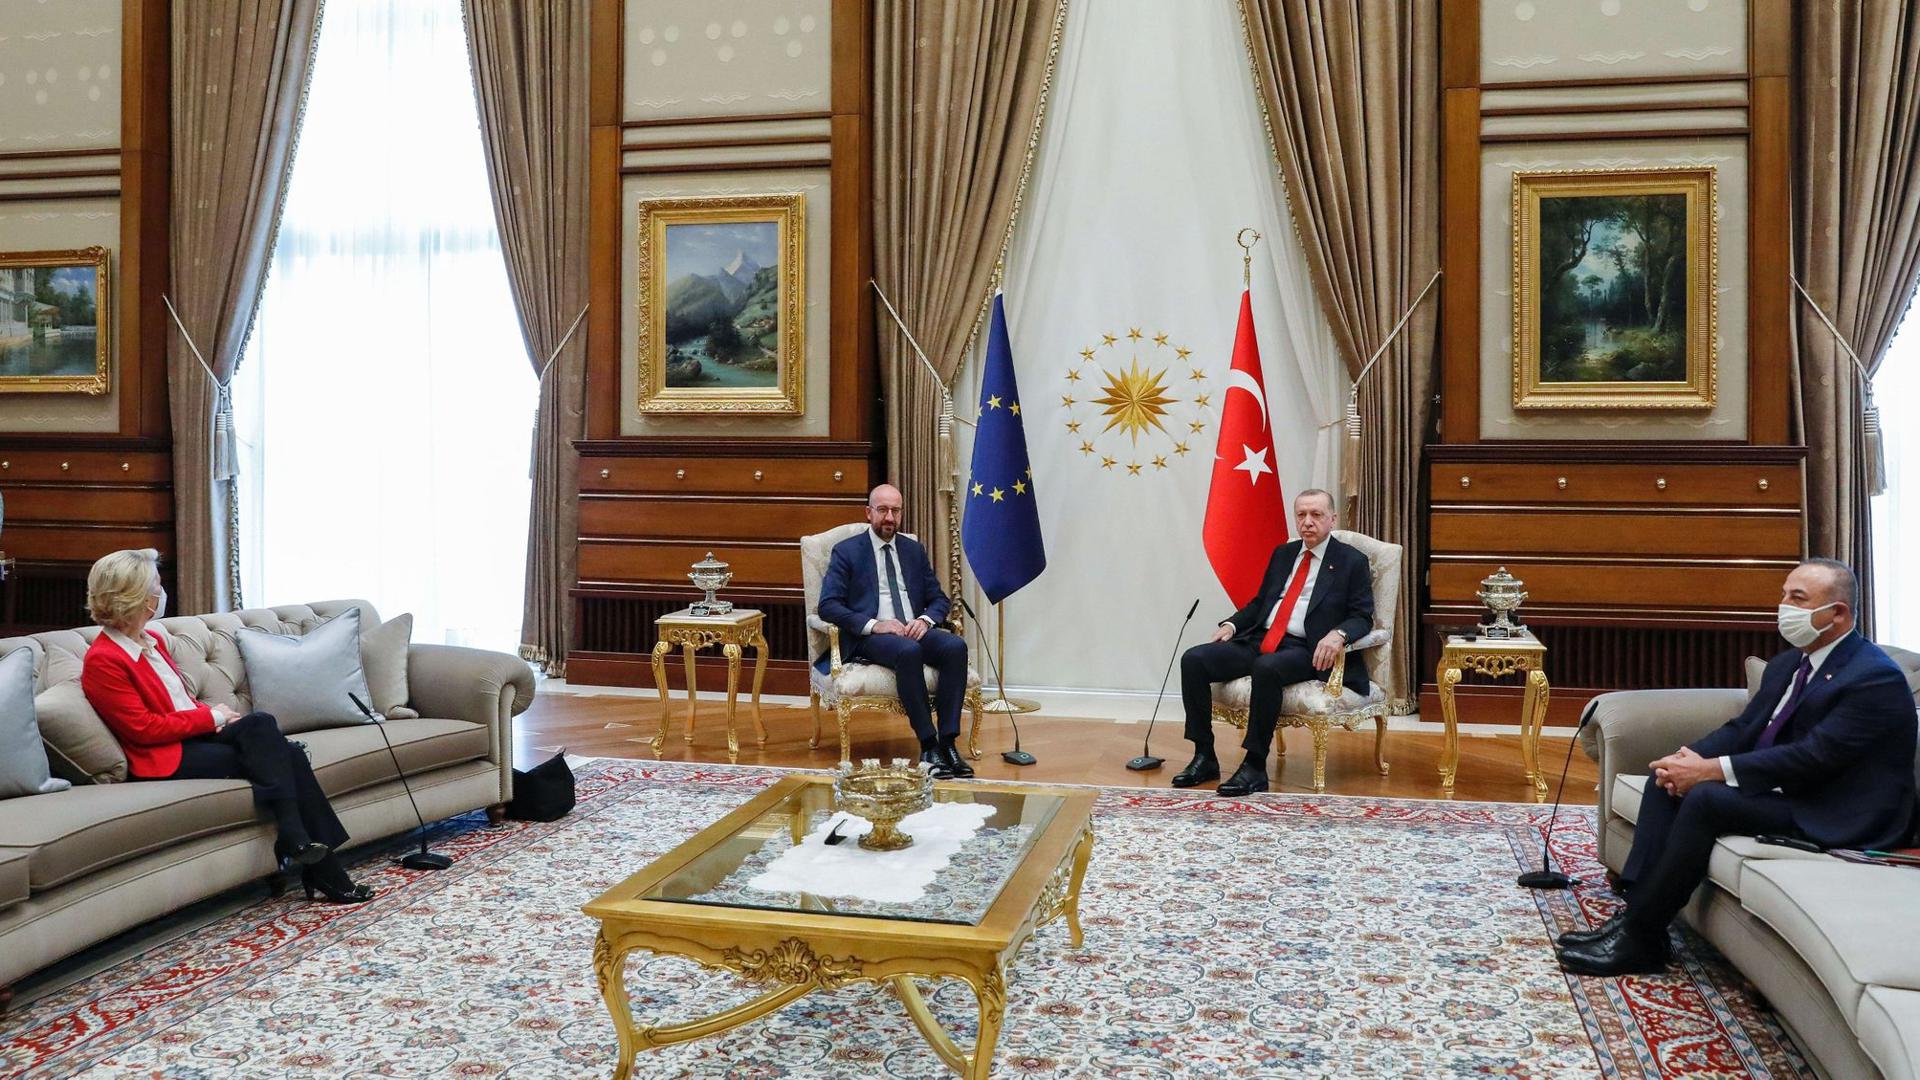 EU-Kommissionspräsidentin Ursula von der Leyen (l) bei dem EU-Türkei-Treffen in Ankara.